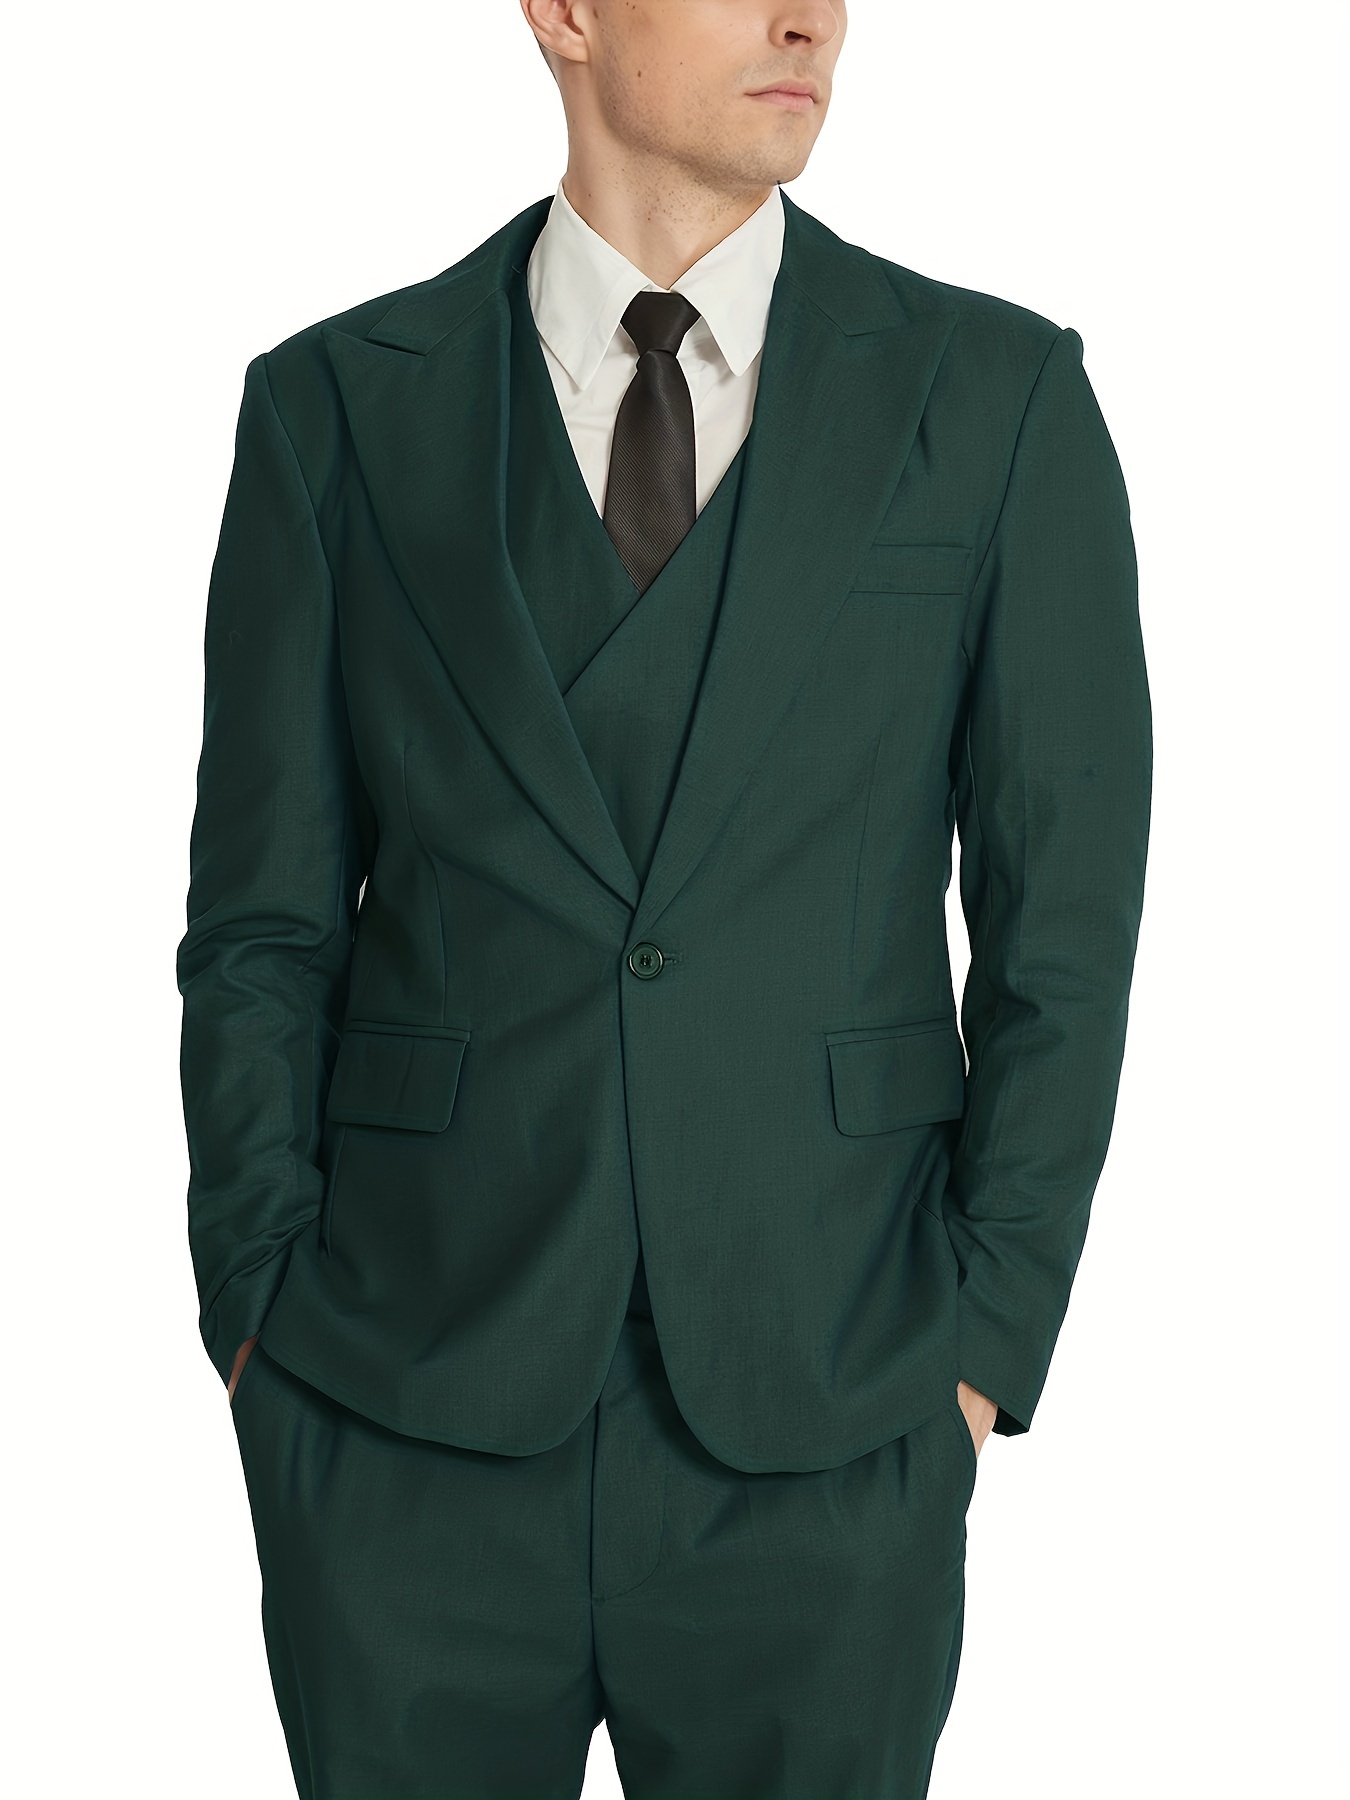 Green Men Slim Fit Suit Gentleman Prom Business Groom Tuxedo Wedding Suit  Blazer